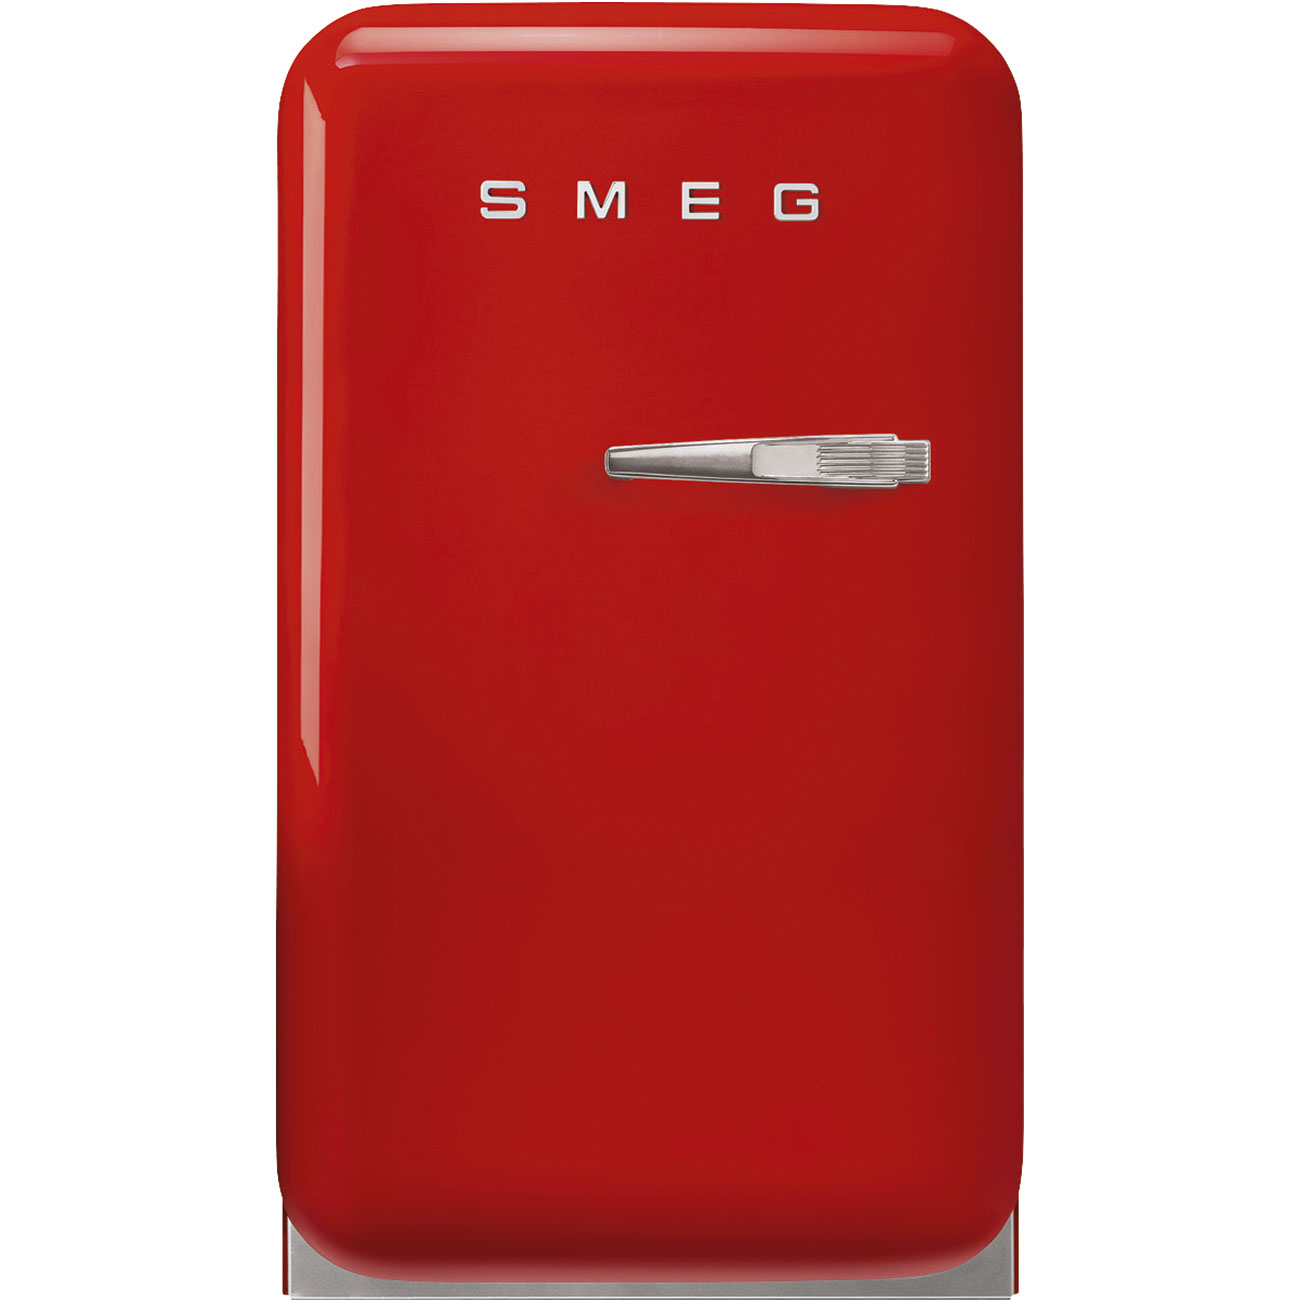 Red refrigerator - Smeg_1